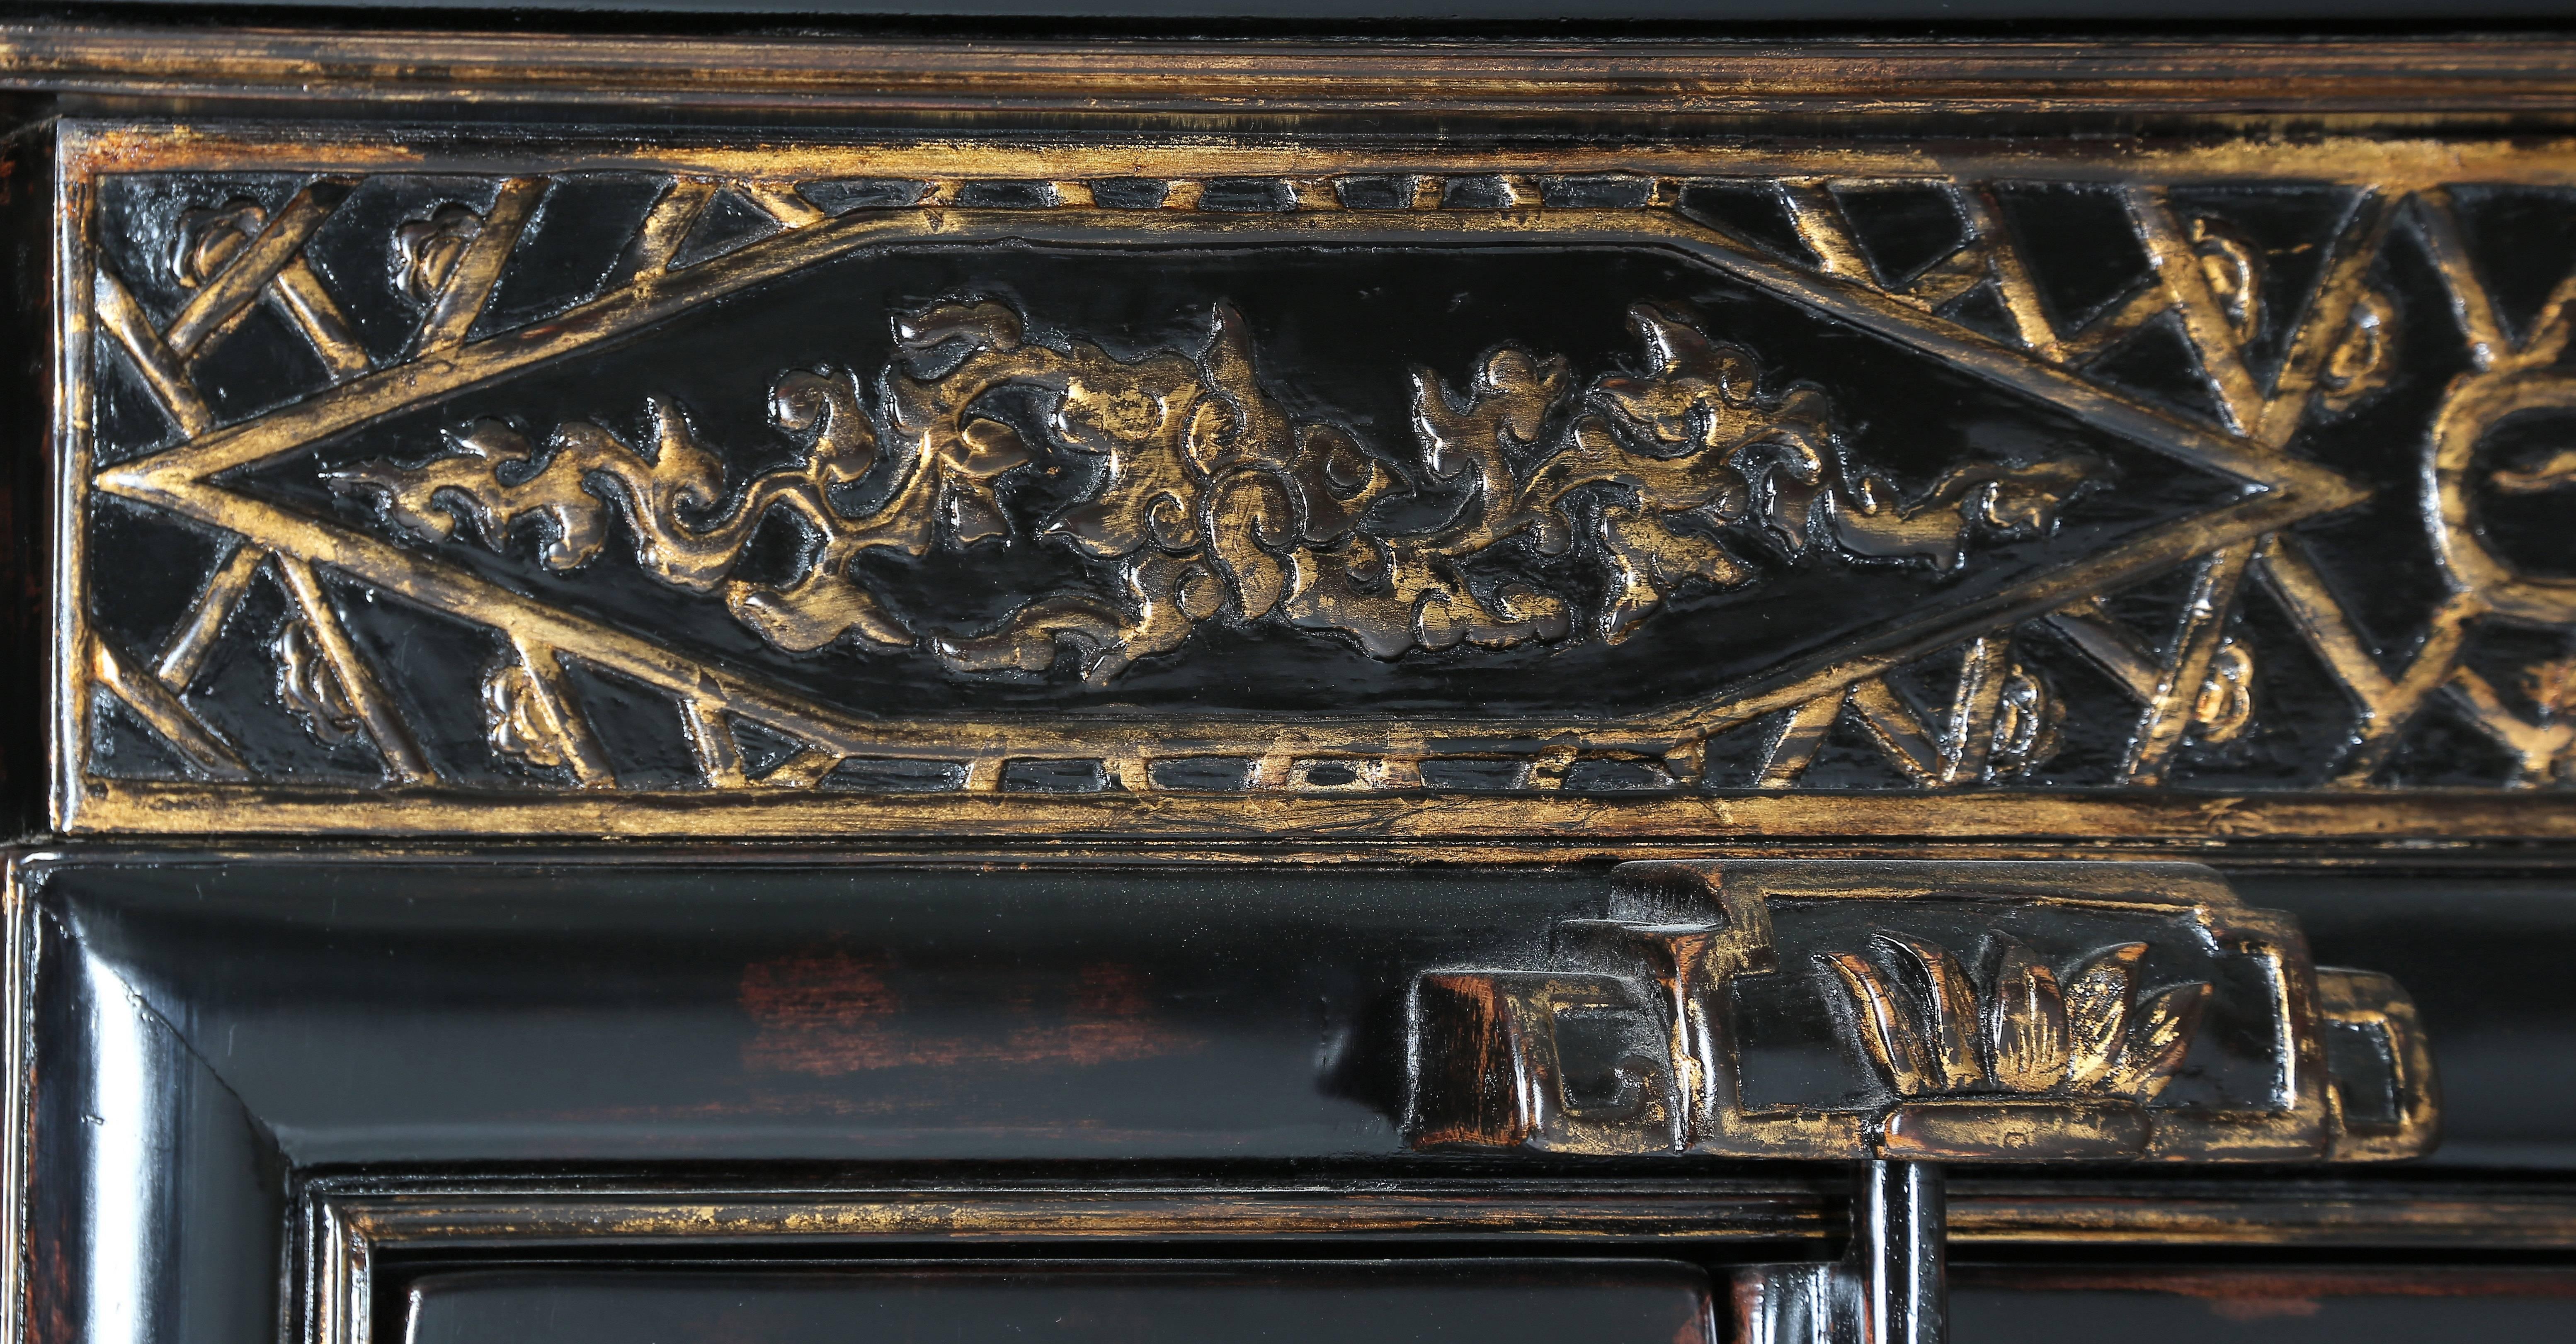 Ce charmant meuble présente un bord supérieur mouluré en forme de plaque de glace au-dessus d'une taille haute, décoré de sculptures florales en relief dorées dans des bordures géométriques dorées, entourées d'un motif de glace craquelée sur le